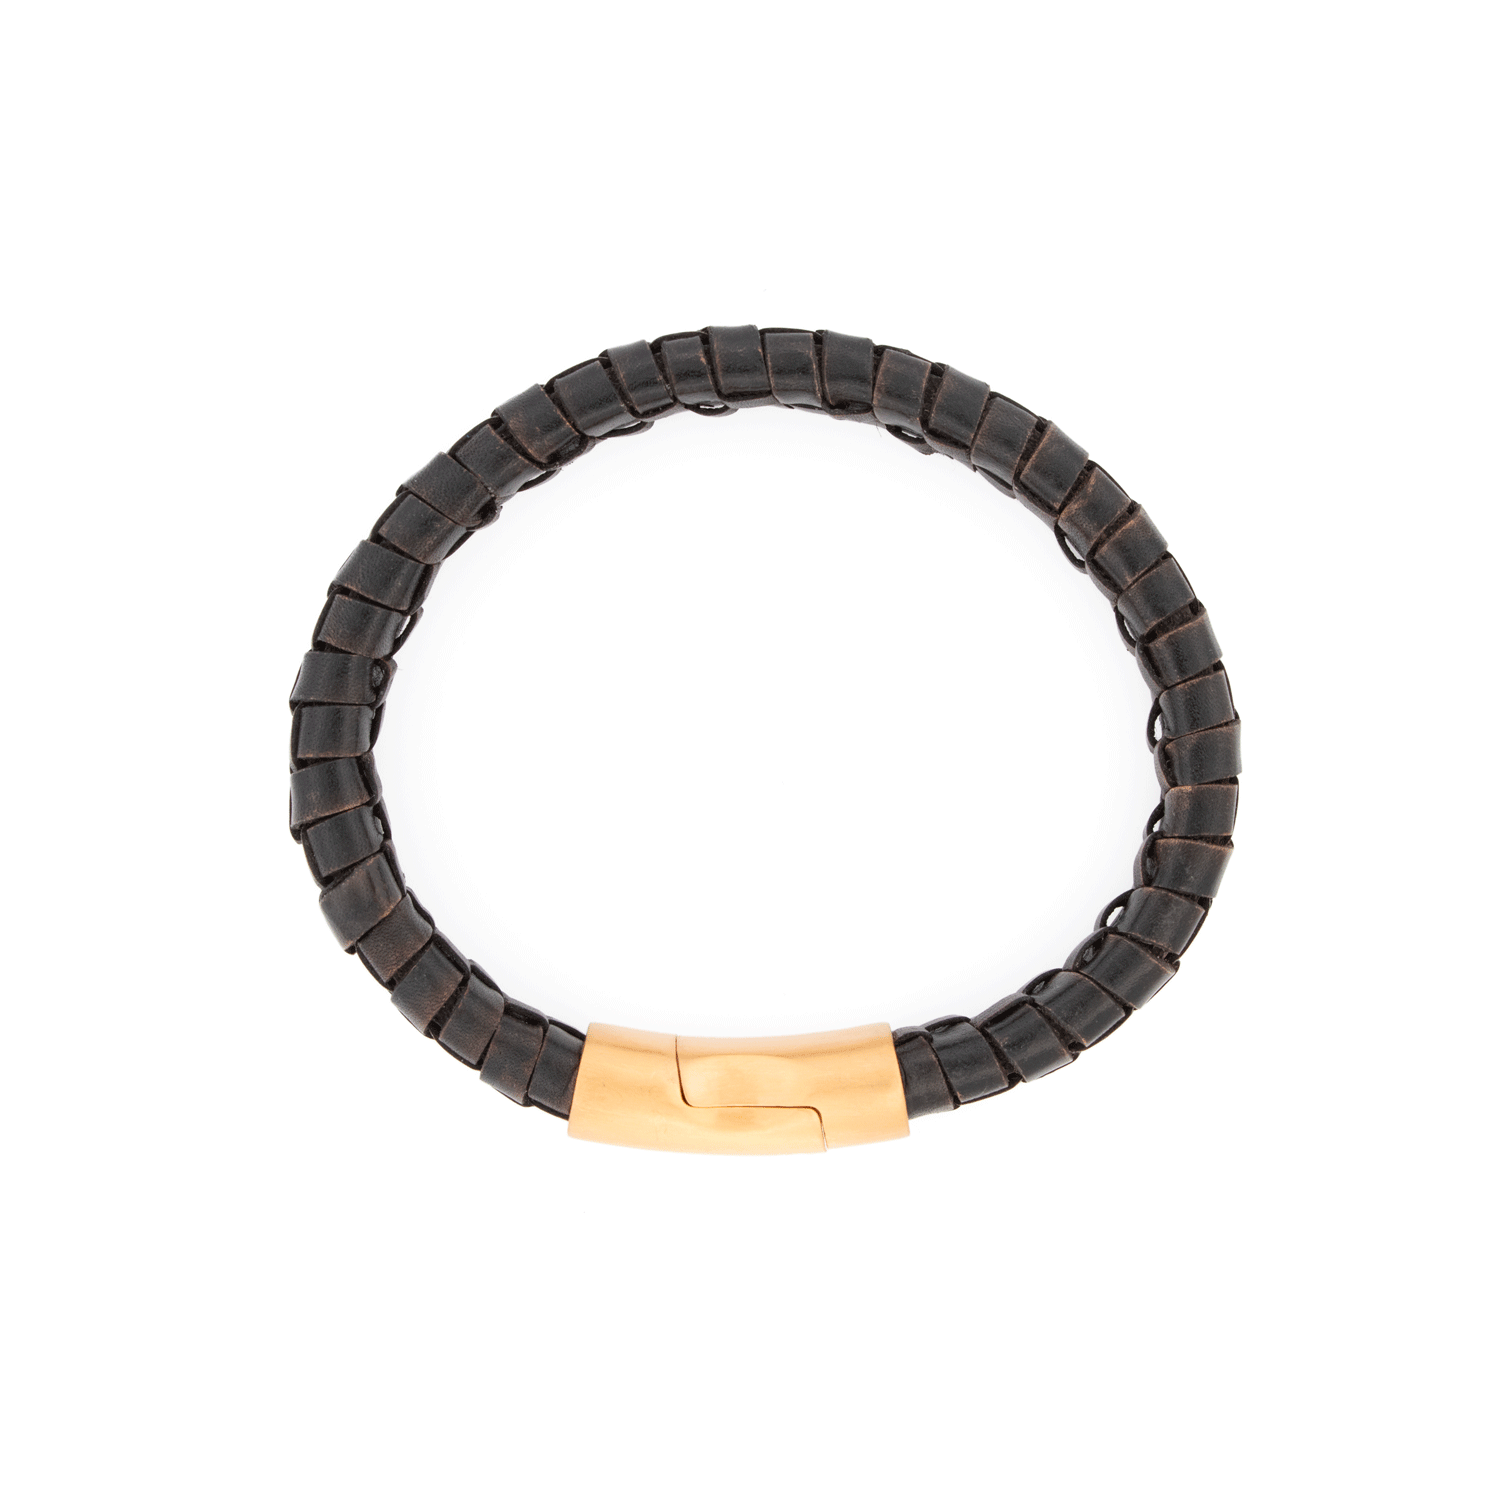 AMSTERDAM SIERAAD - Bracelet Leather Black